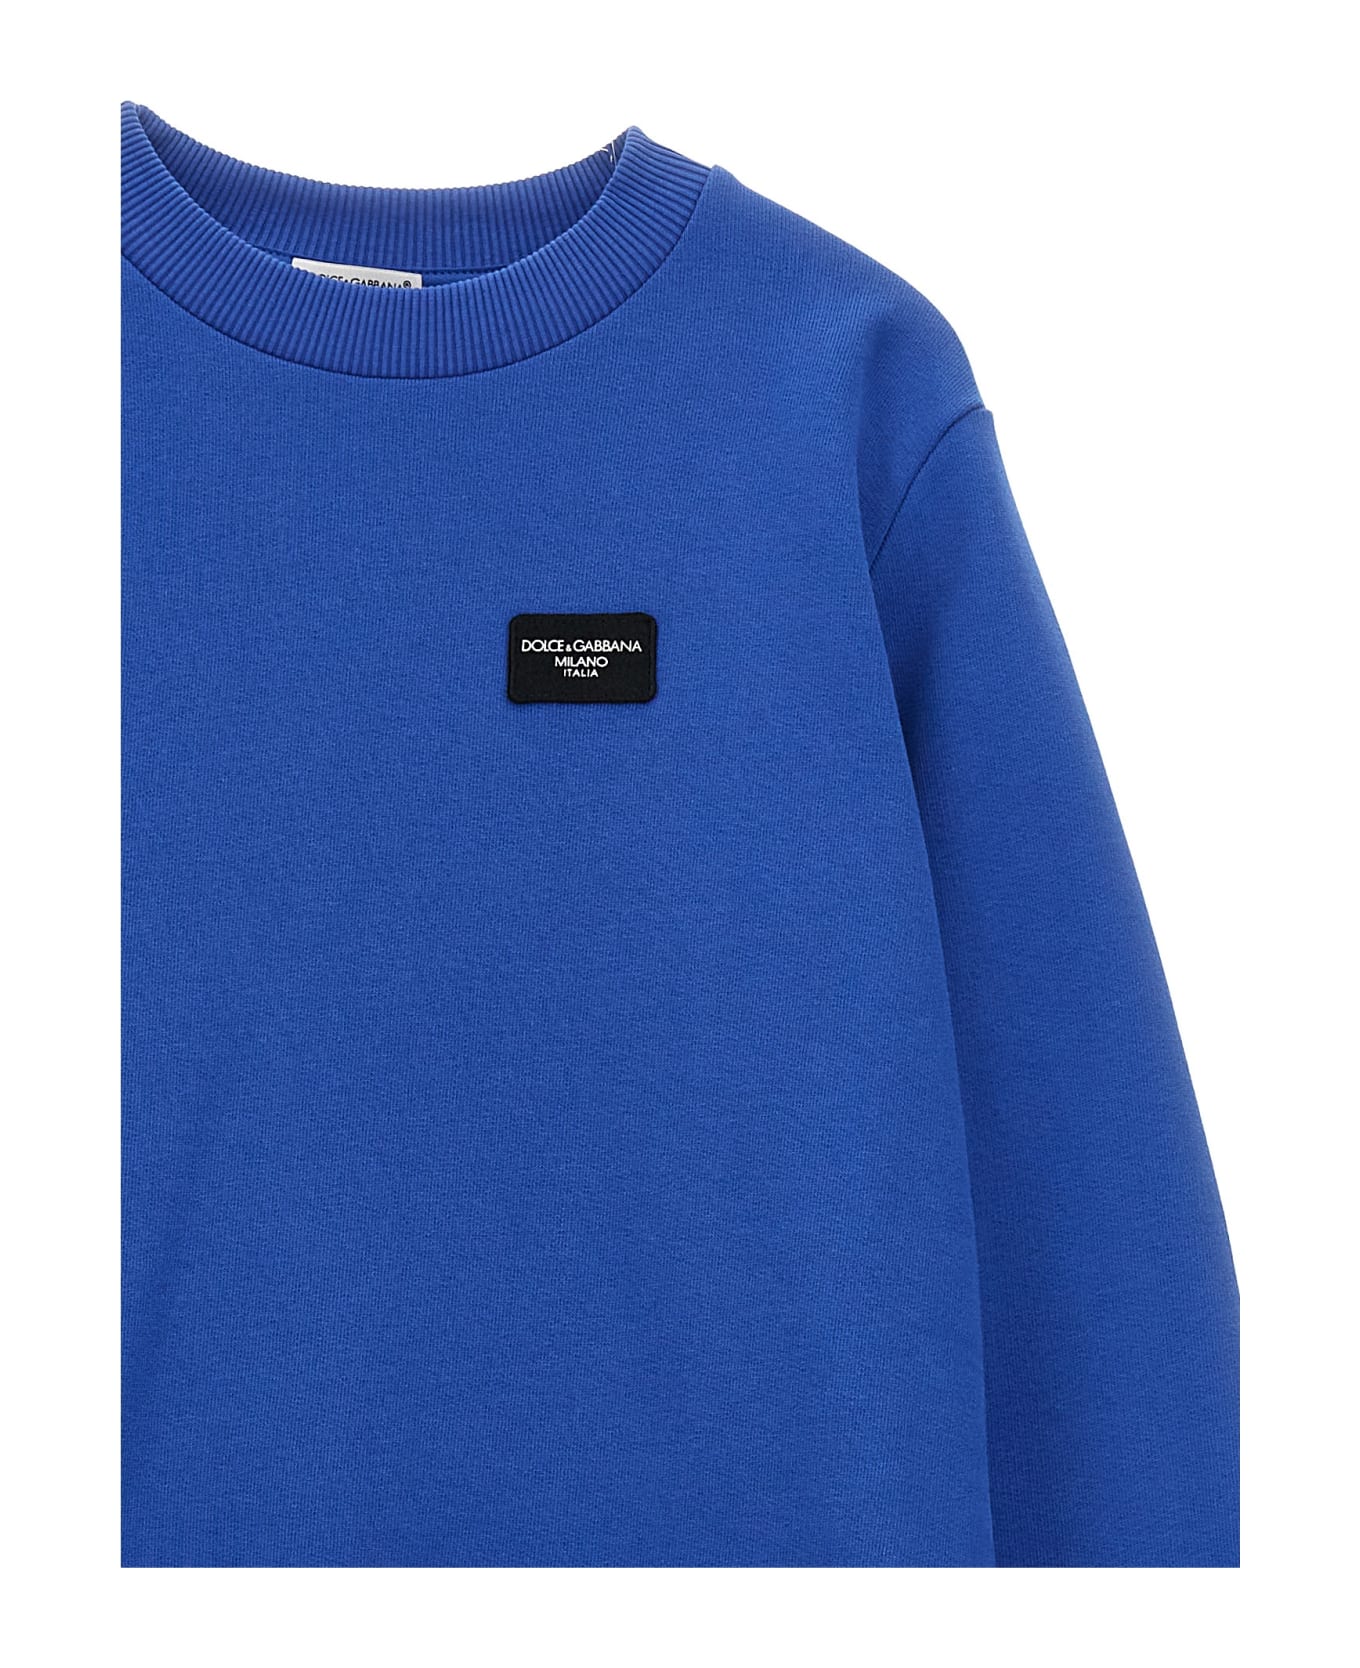 Dolce & Gabbana Logo Sweatshirt - Blu